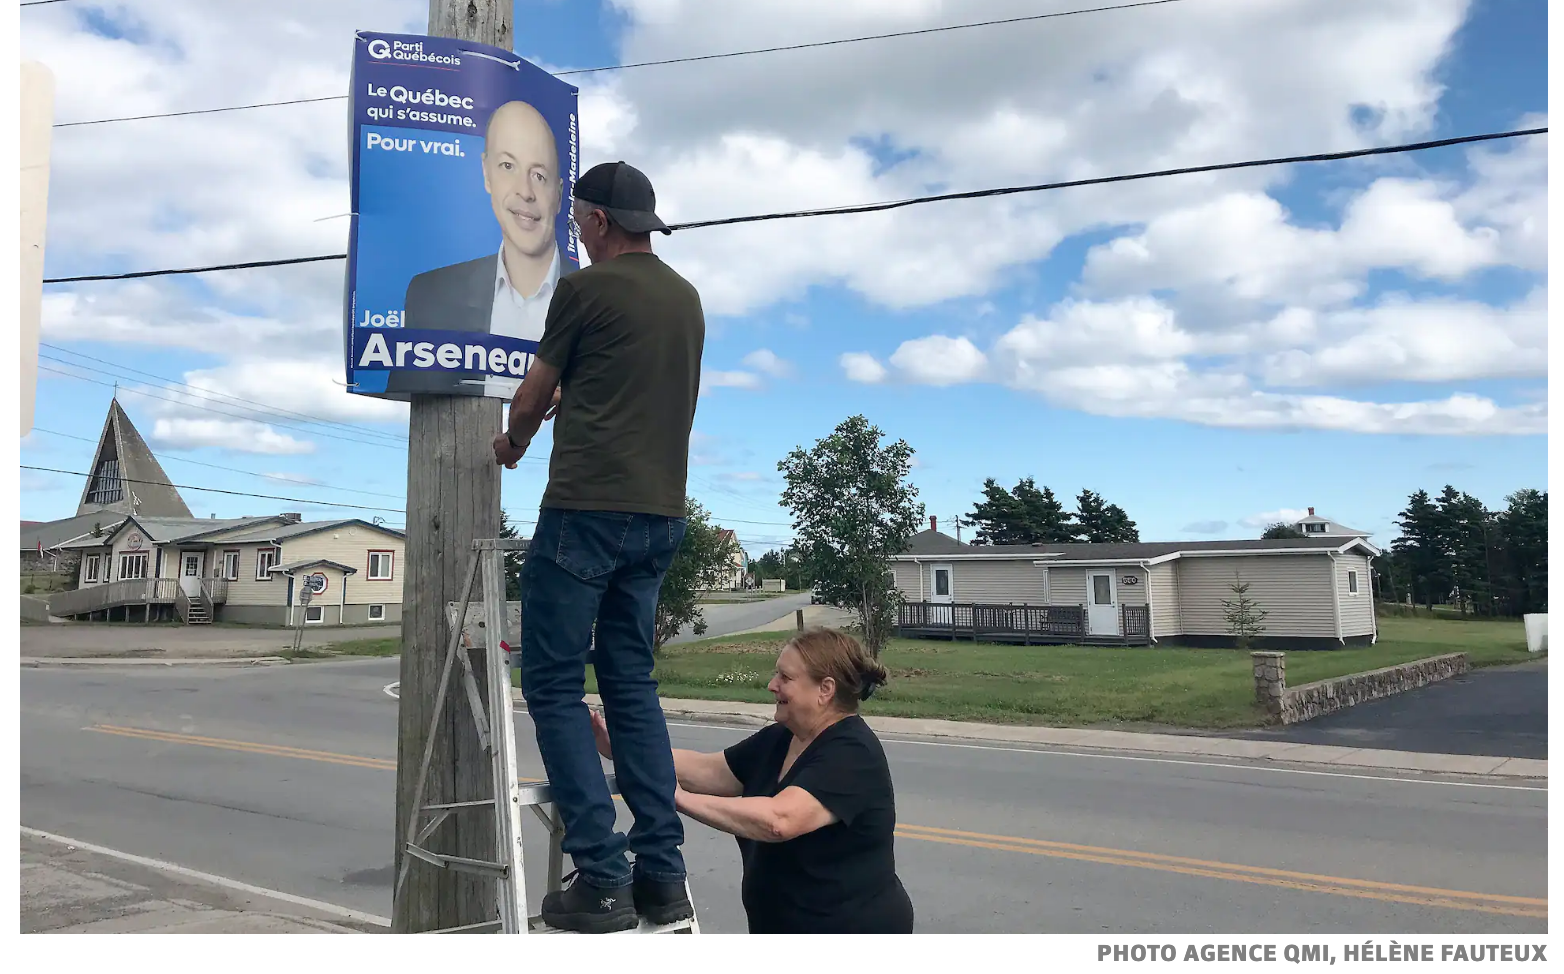 Québec 2022 : Les pancartes déjà bien visibles au Québec